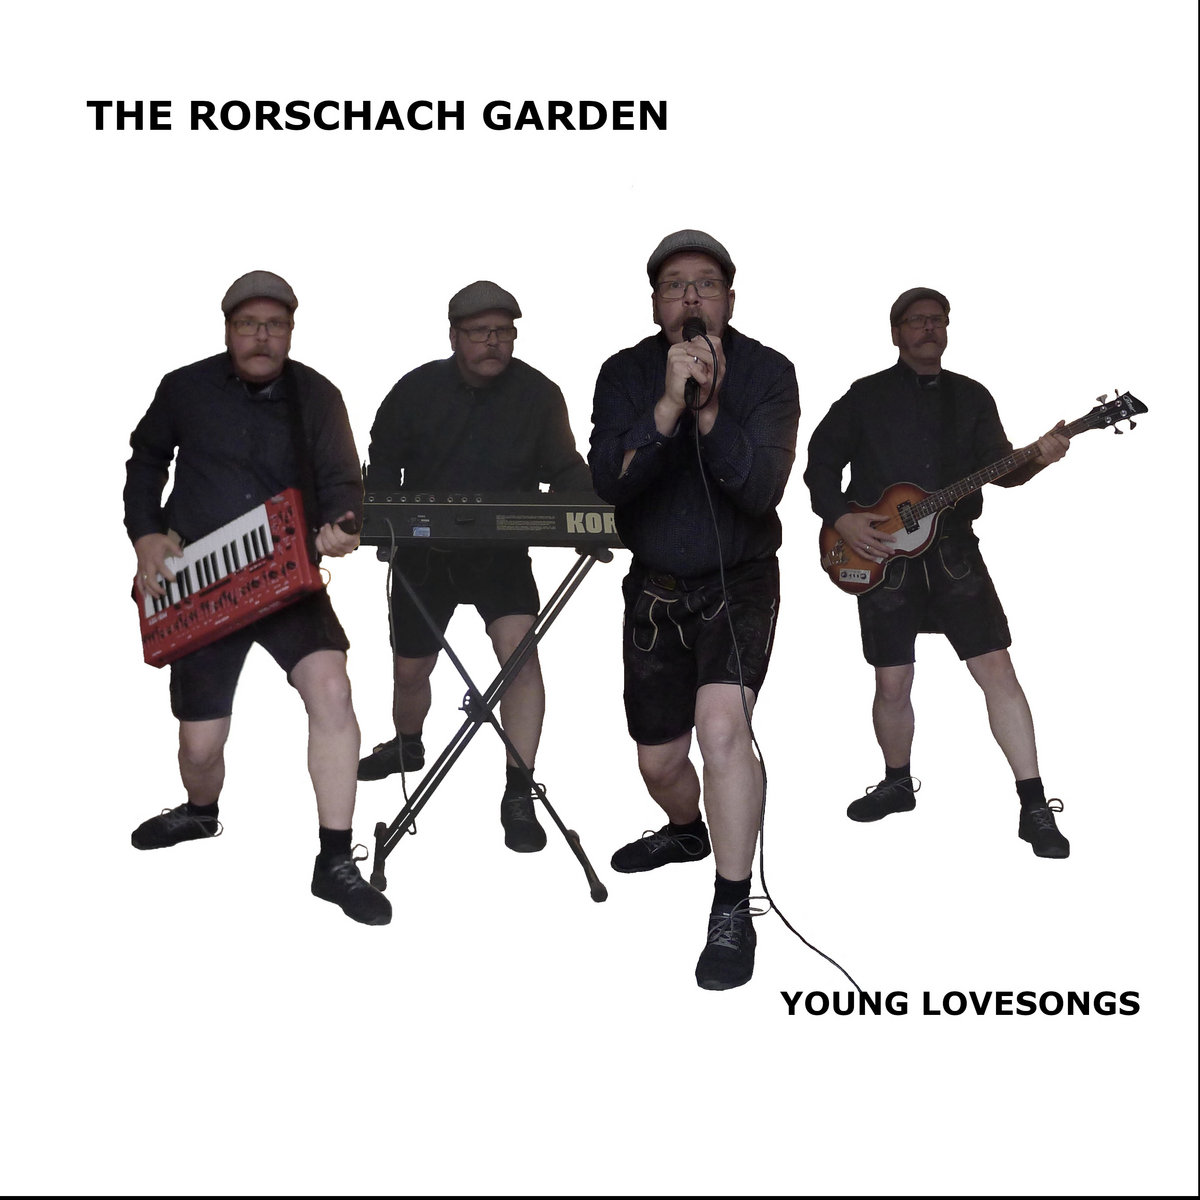 The Rorschach Garden, “Young Lovesongs”